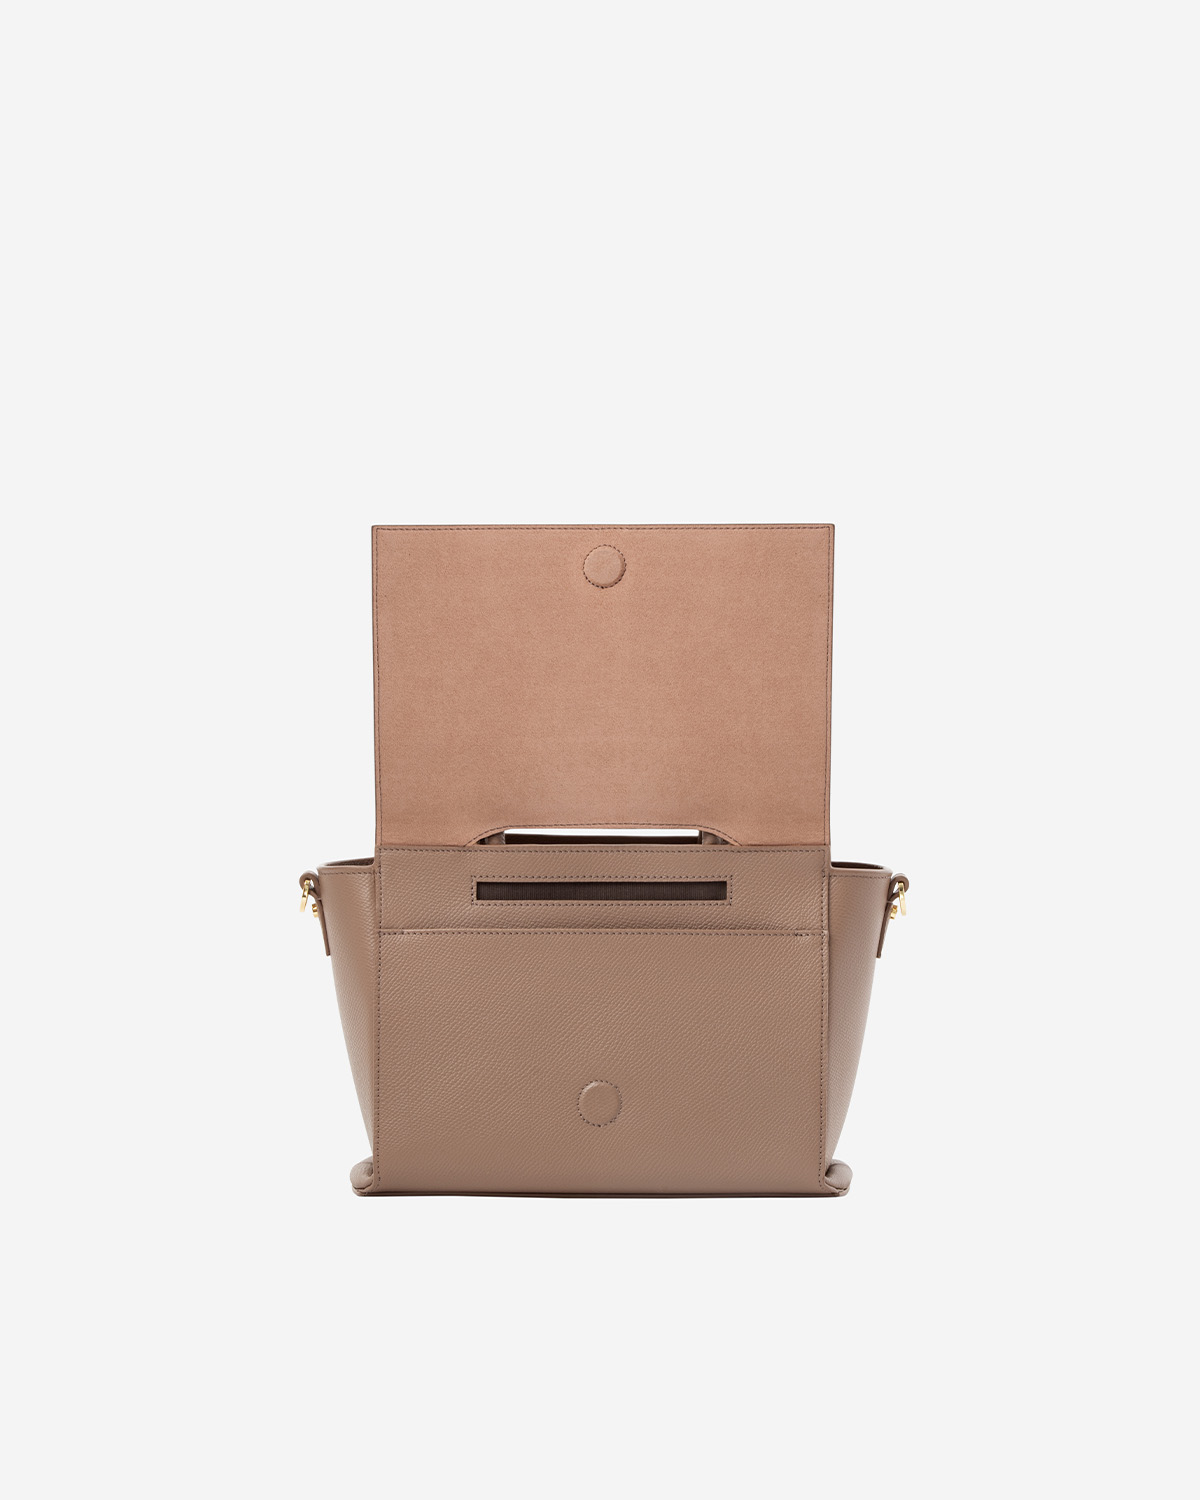 กระเป๋าถือหนังแท้ VERA Heidi Leather Handbag, ไซส์ 25 สี Wood Rose